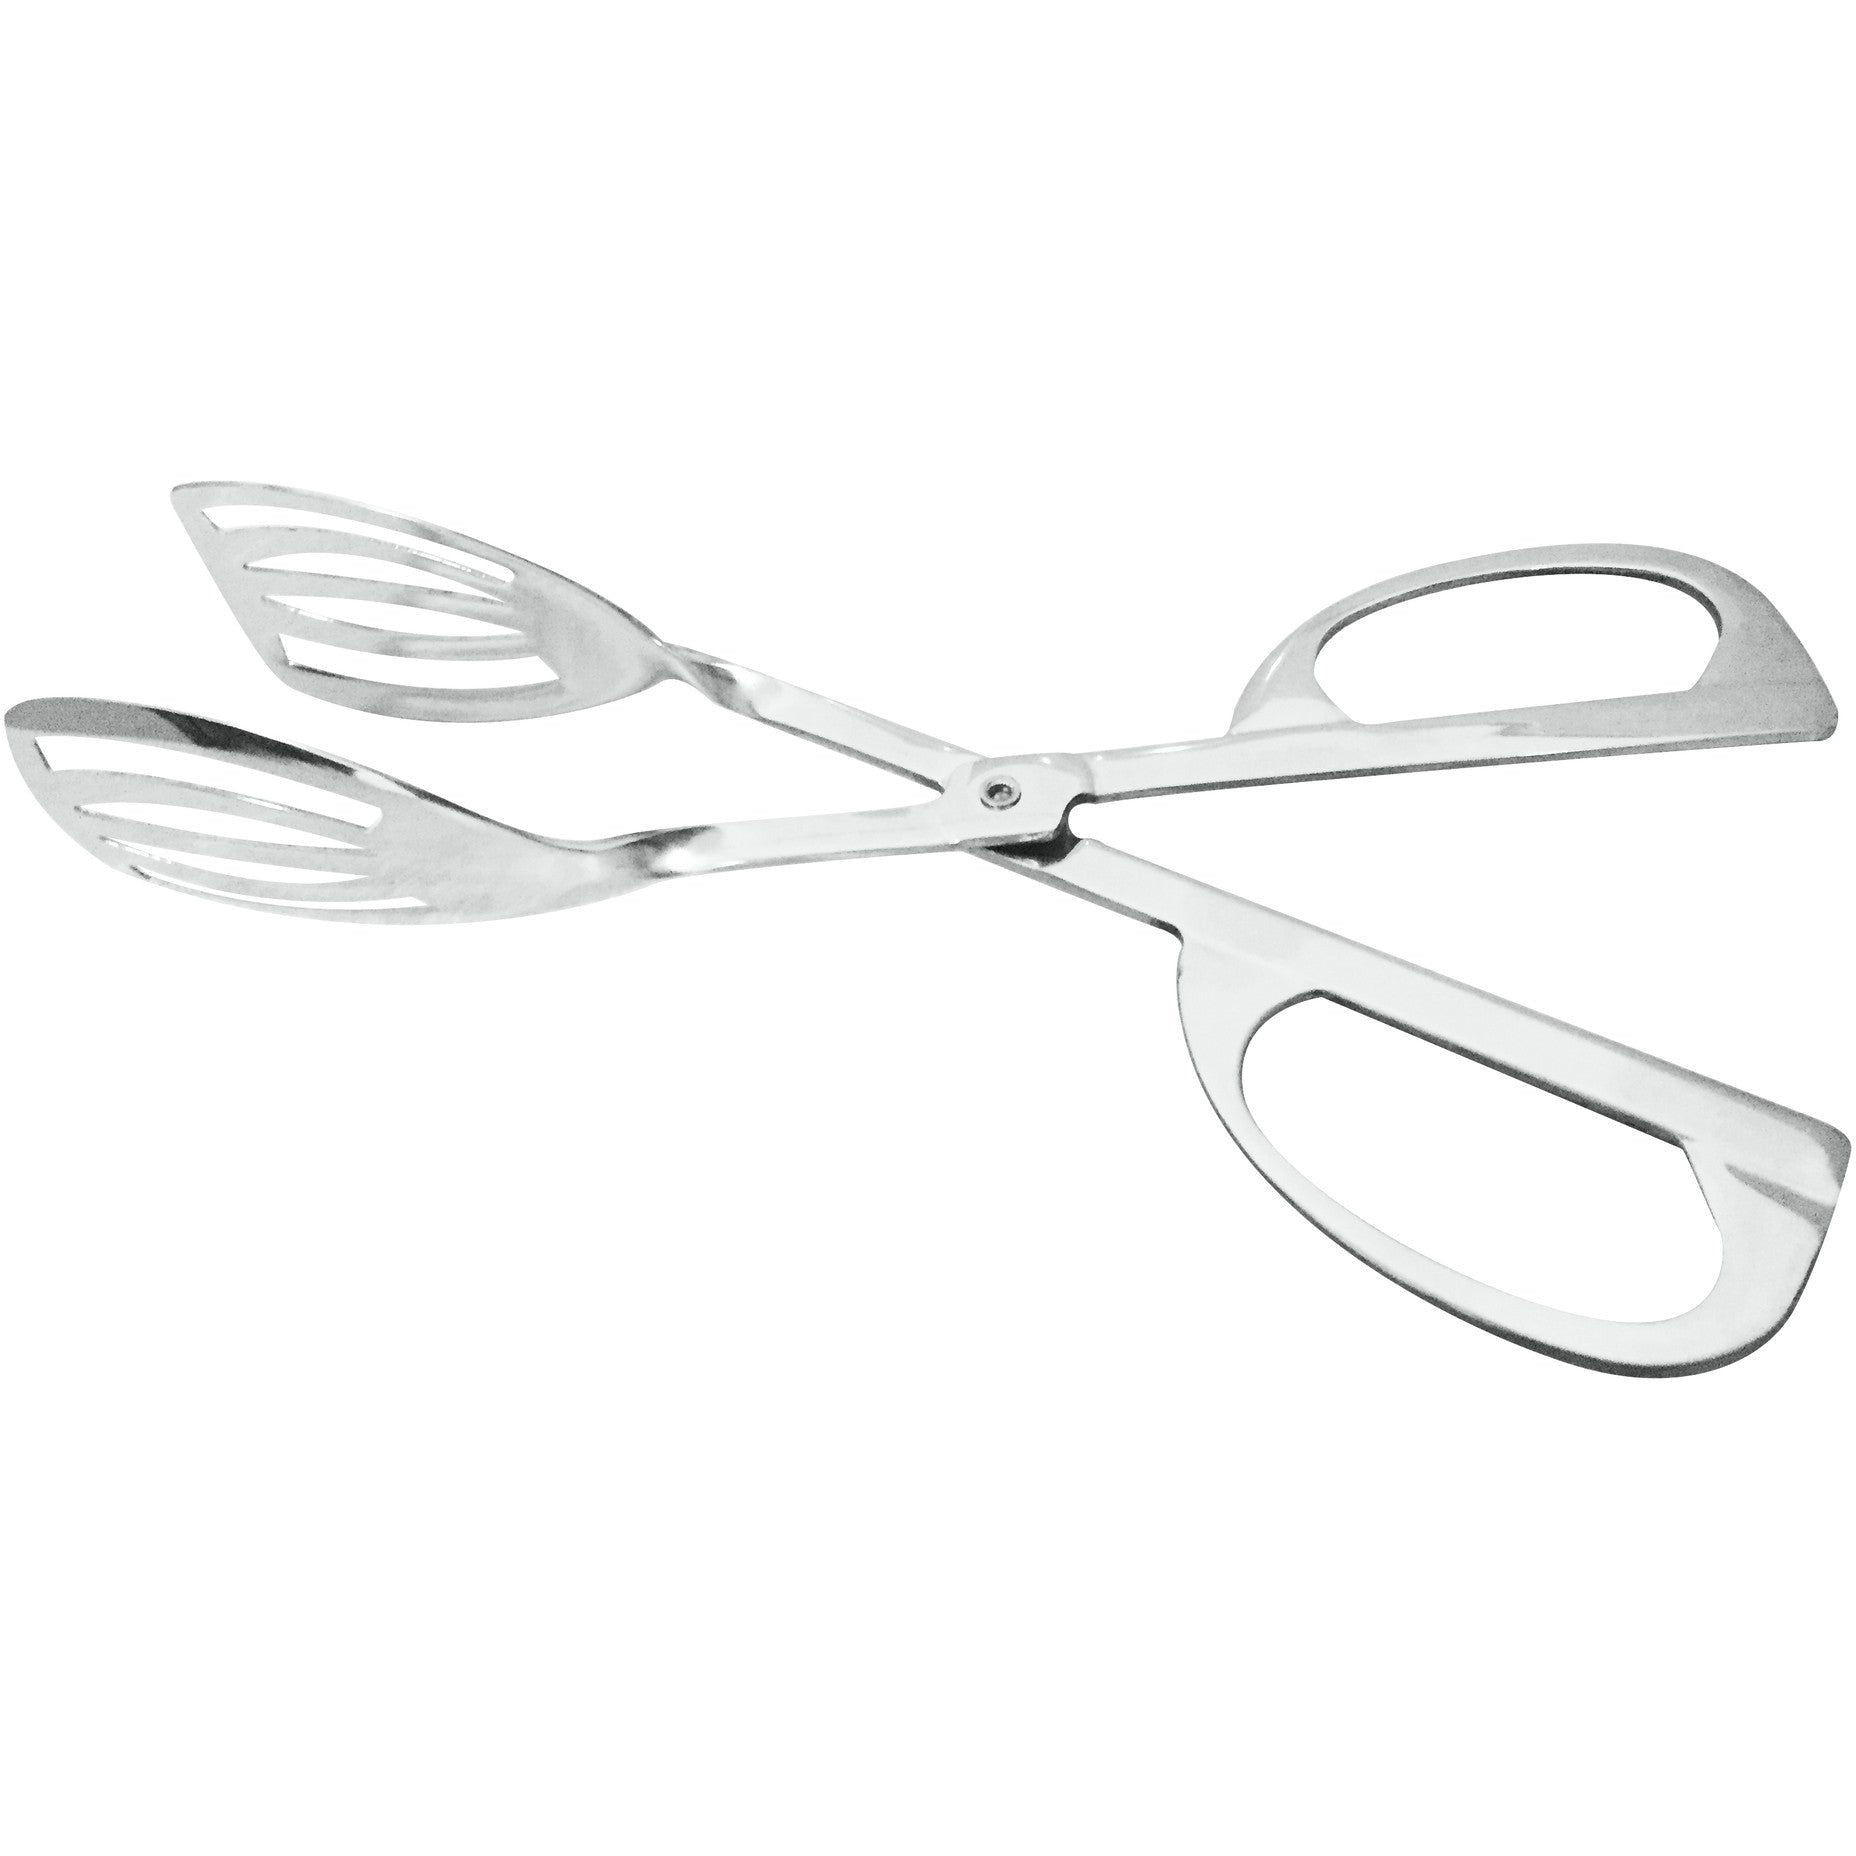 Stainless steel scissor serving tong (bulk packed)